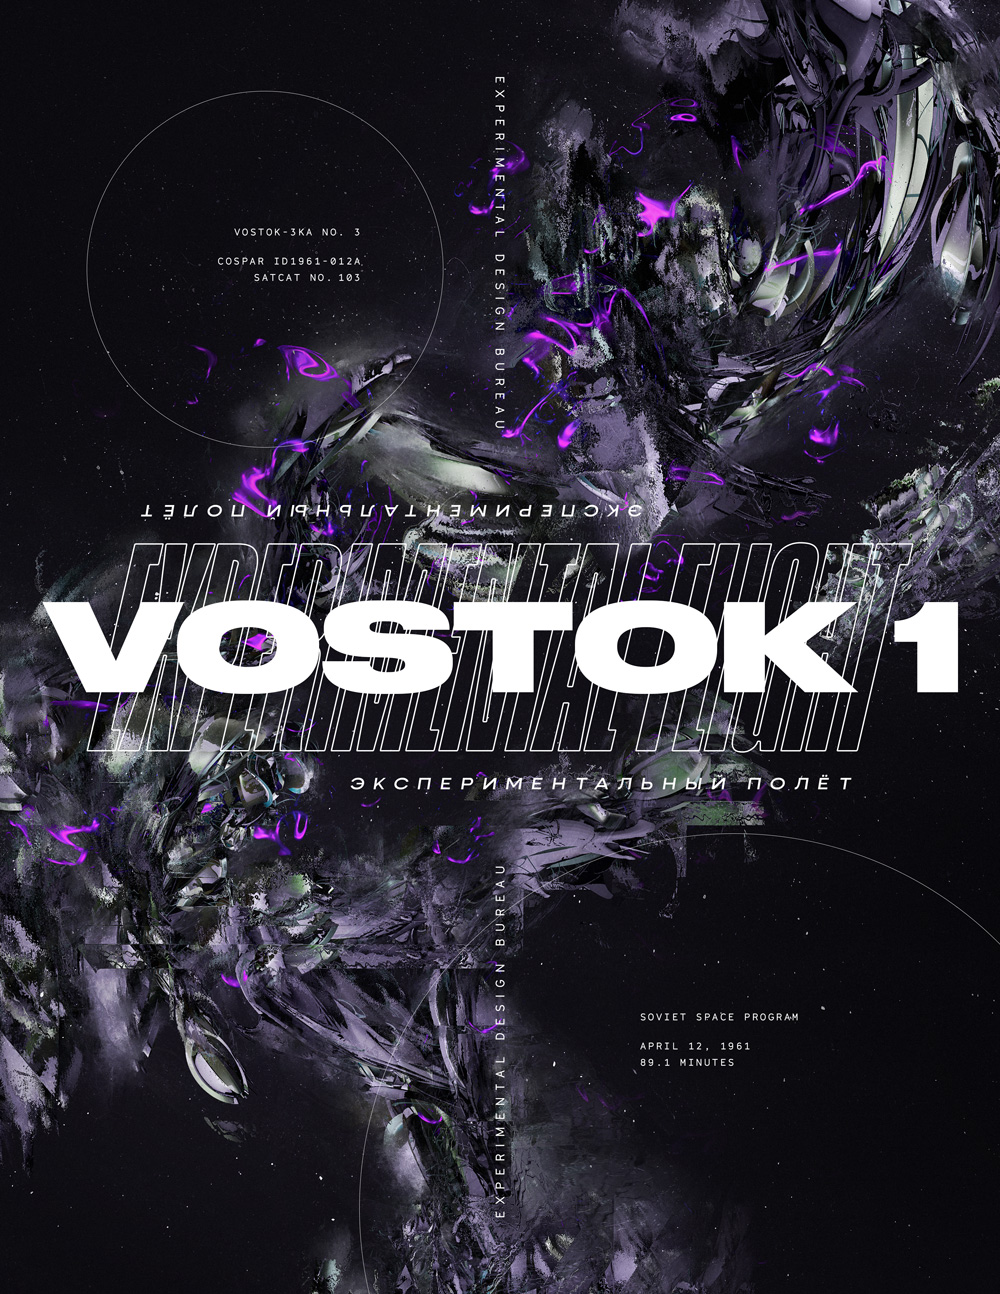 Vostek-1